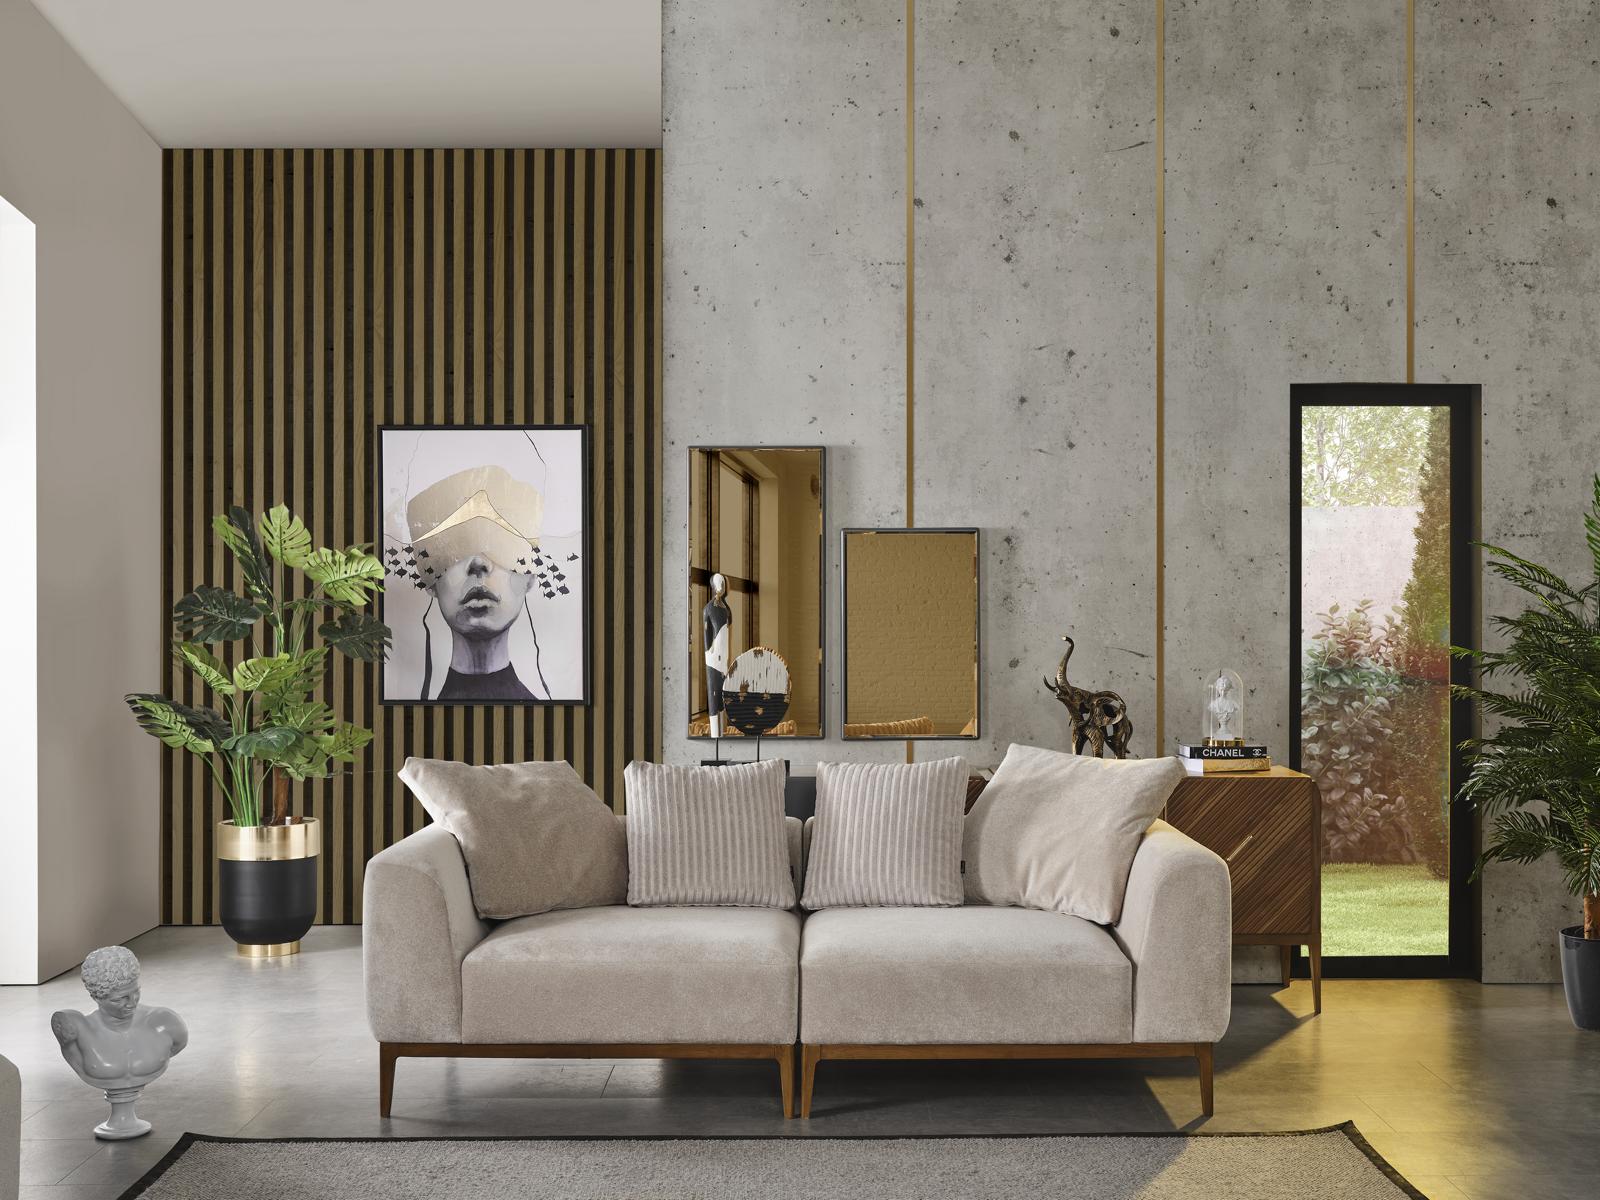 Sofa 3 Sitzer weiß Stoff Wohnzimmer Luxus Möbel Couch Neu Modern